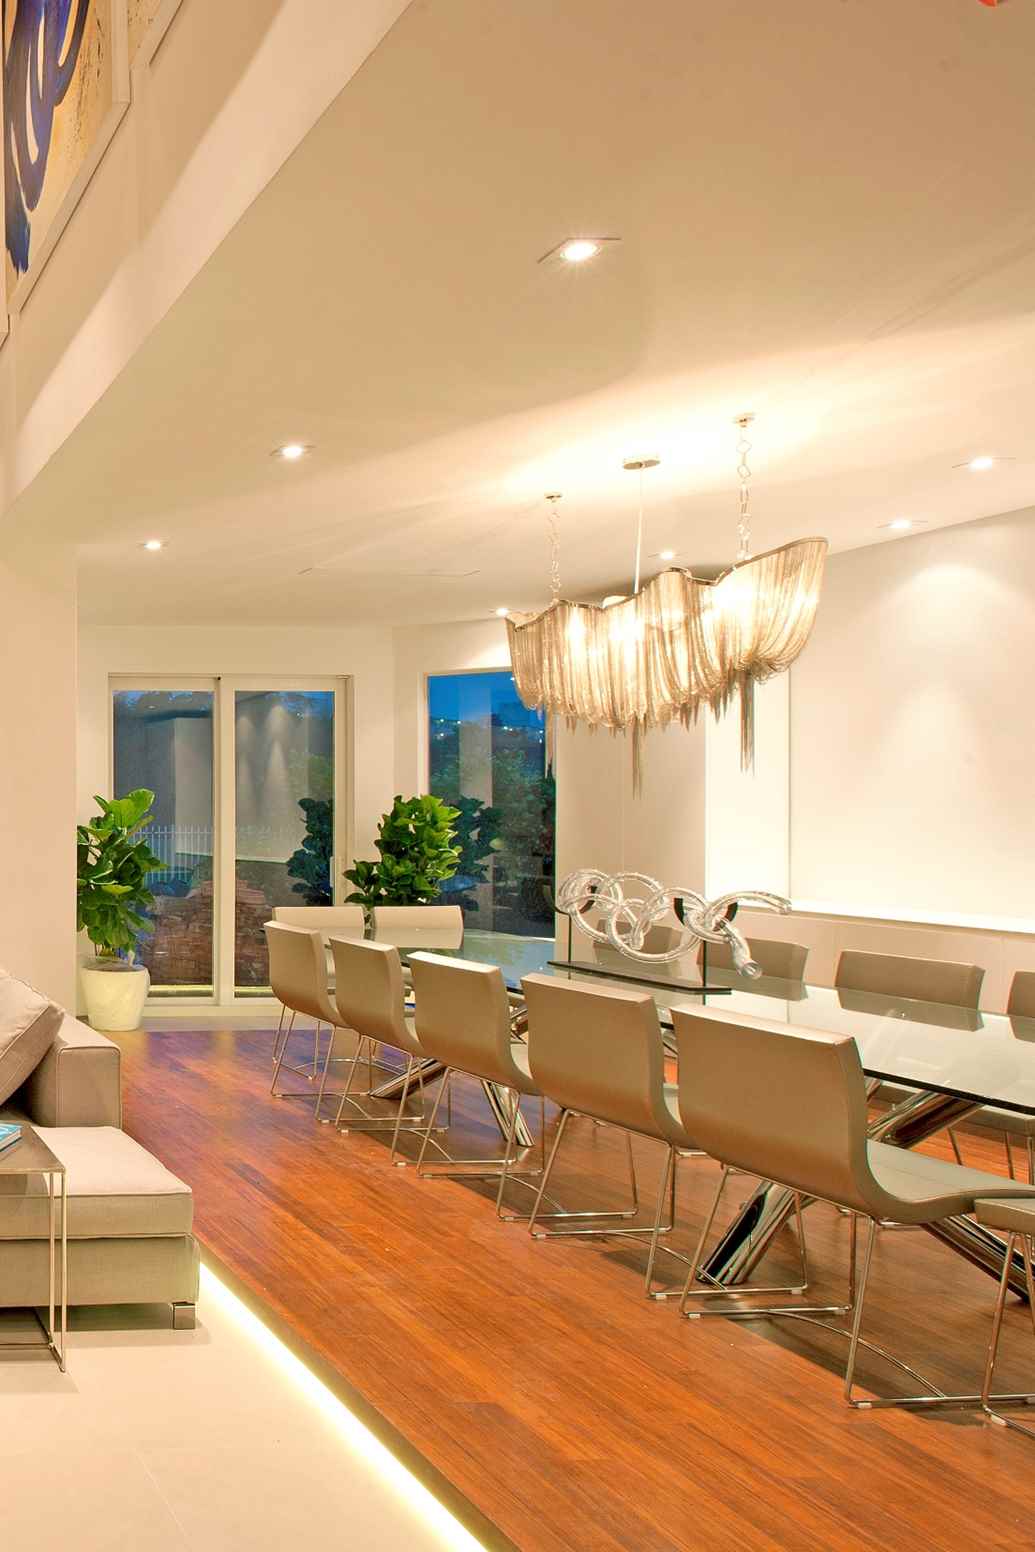 Designer Lighting Inspires our Miami Interiors